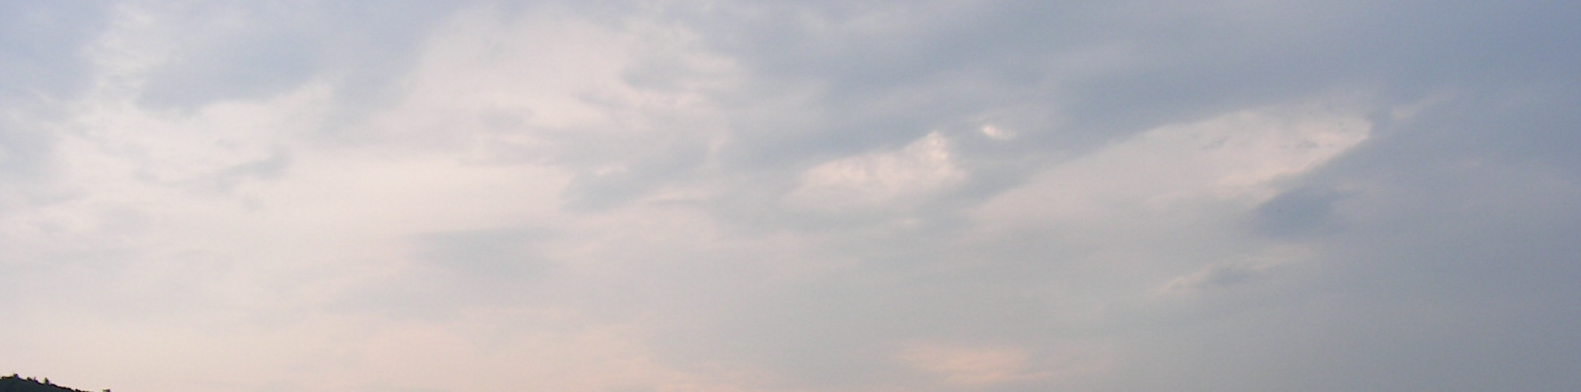 Obrázek 4: Vzhled oblaku aerosolu rozptylujícího se jako těžký plyn (snímek pořízený při terénních testech projektu SPREAD zachycuje tvar oblaku 120 sekund po úniku ze zdroje); foto autor.